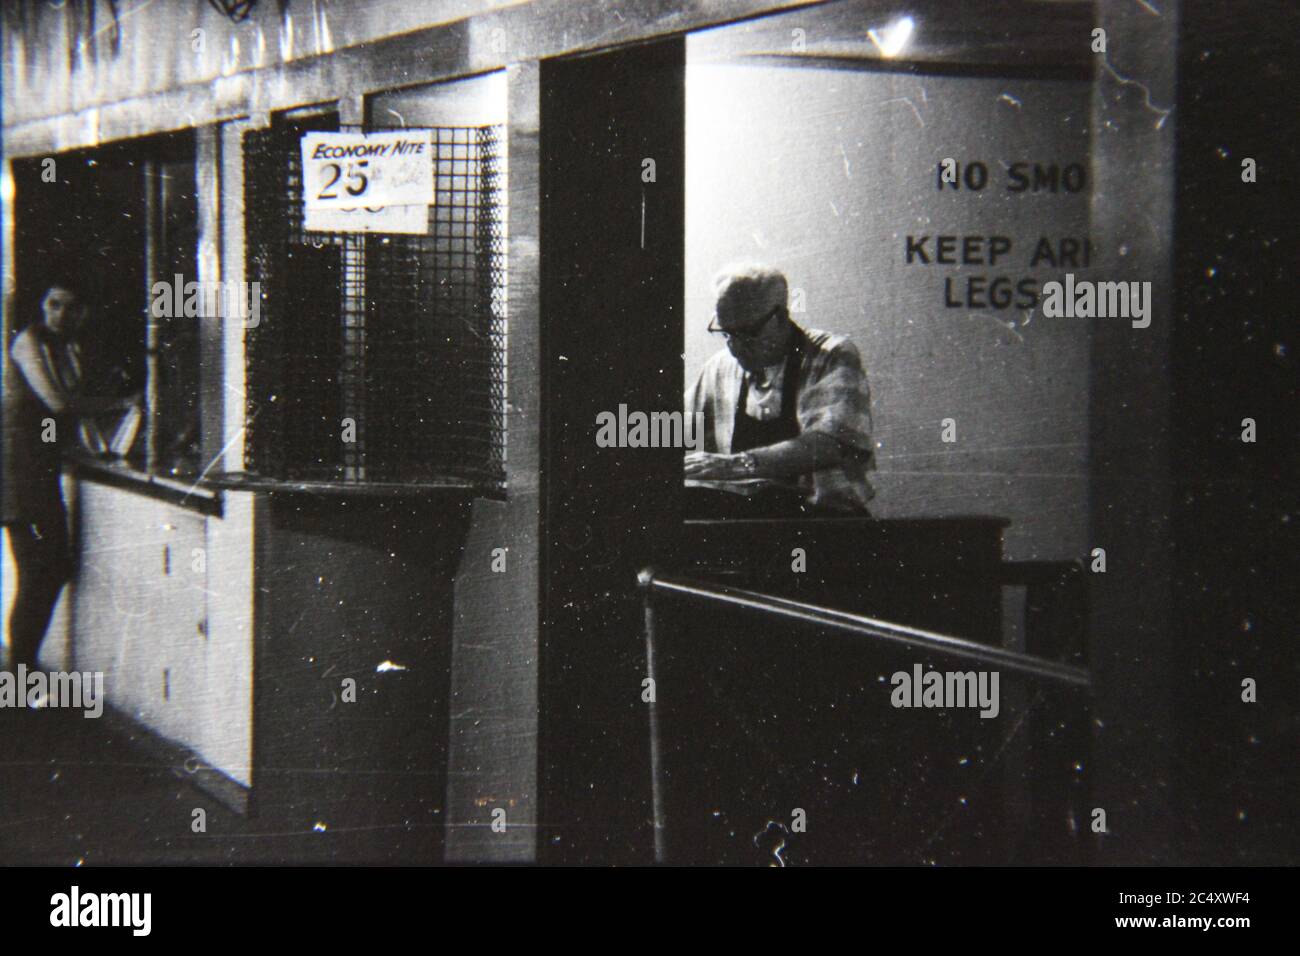 Feine Schwarz-Weiß-Fotografie eines karny Arbeiter in den 70er Jahren inmitten einer extremen Depression und psychischen Qual. Stockfoto